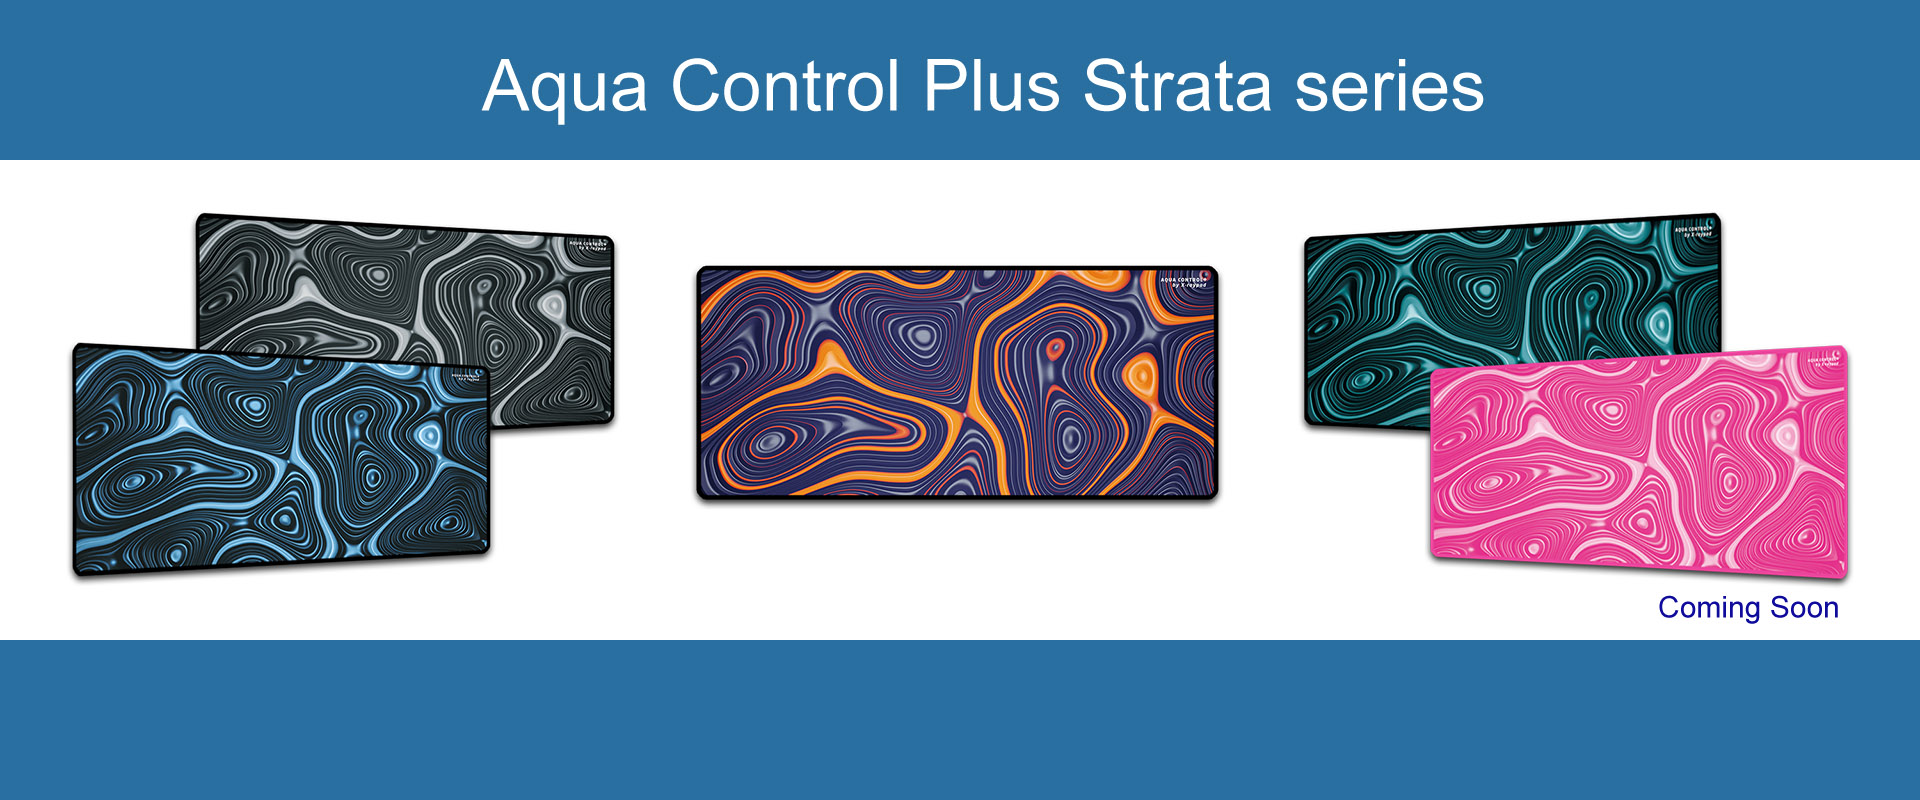 Aqua control plus Strata series